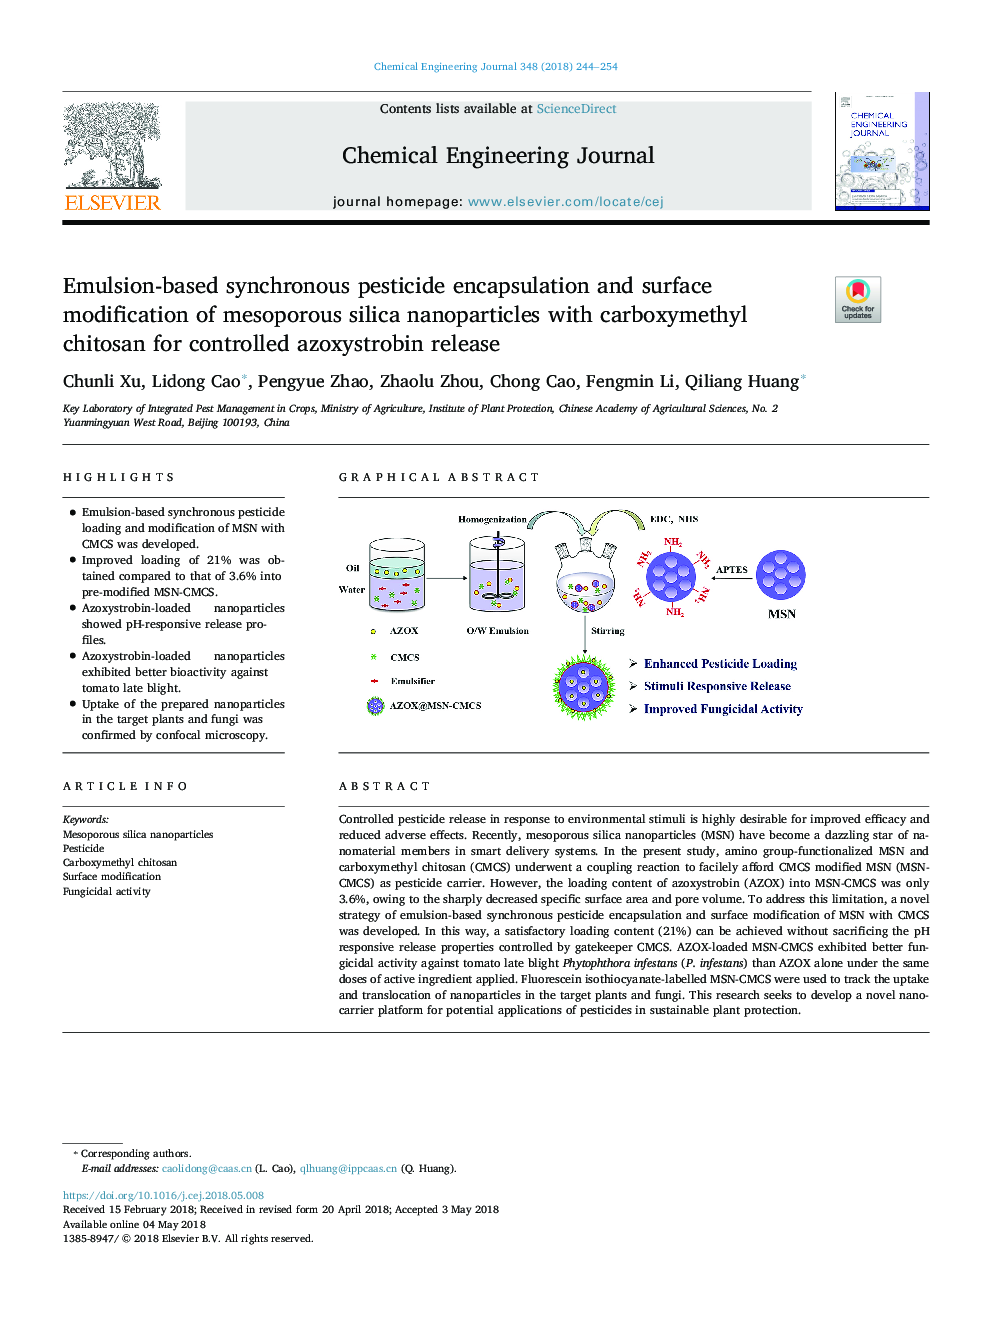 کپسوله سازی همزمان آفت کش های مبتنی بر امولسیون و اصلاح سطح نانوذرات سیلیکای مزوپور با کربوکسی متیل کیتوزان برای آزوسیستروبین کنترل شده 